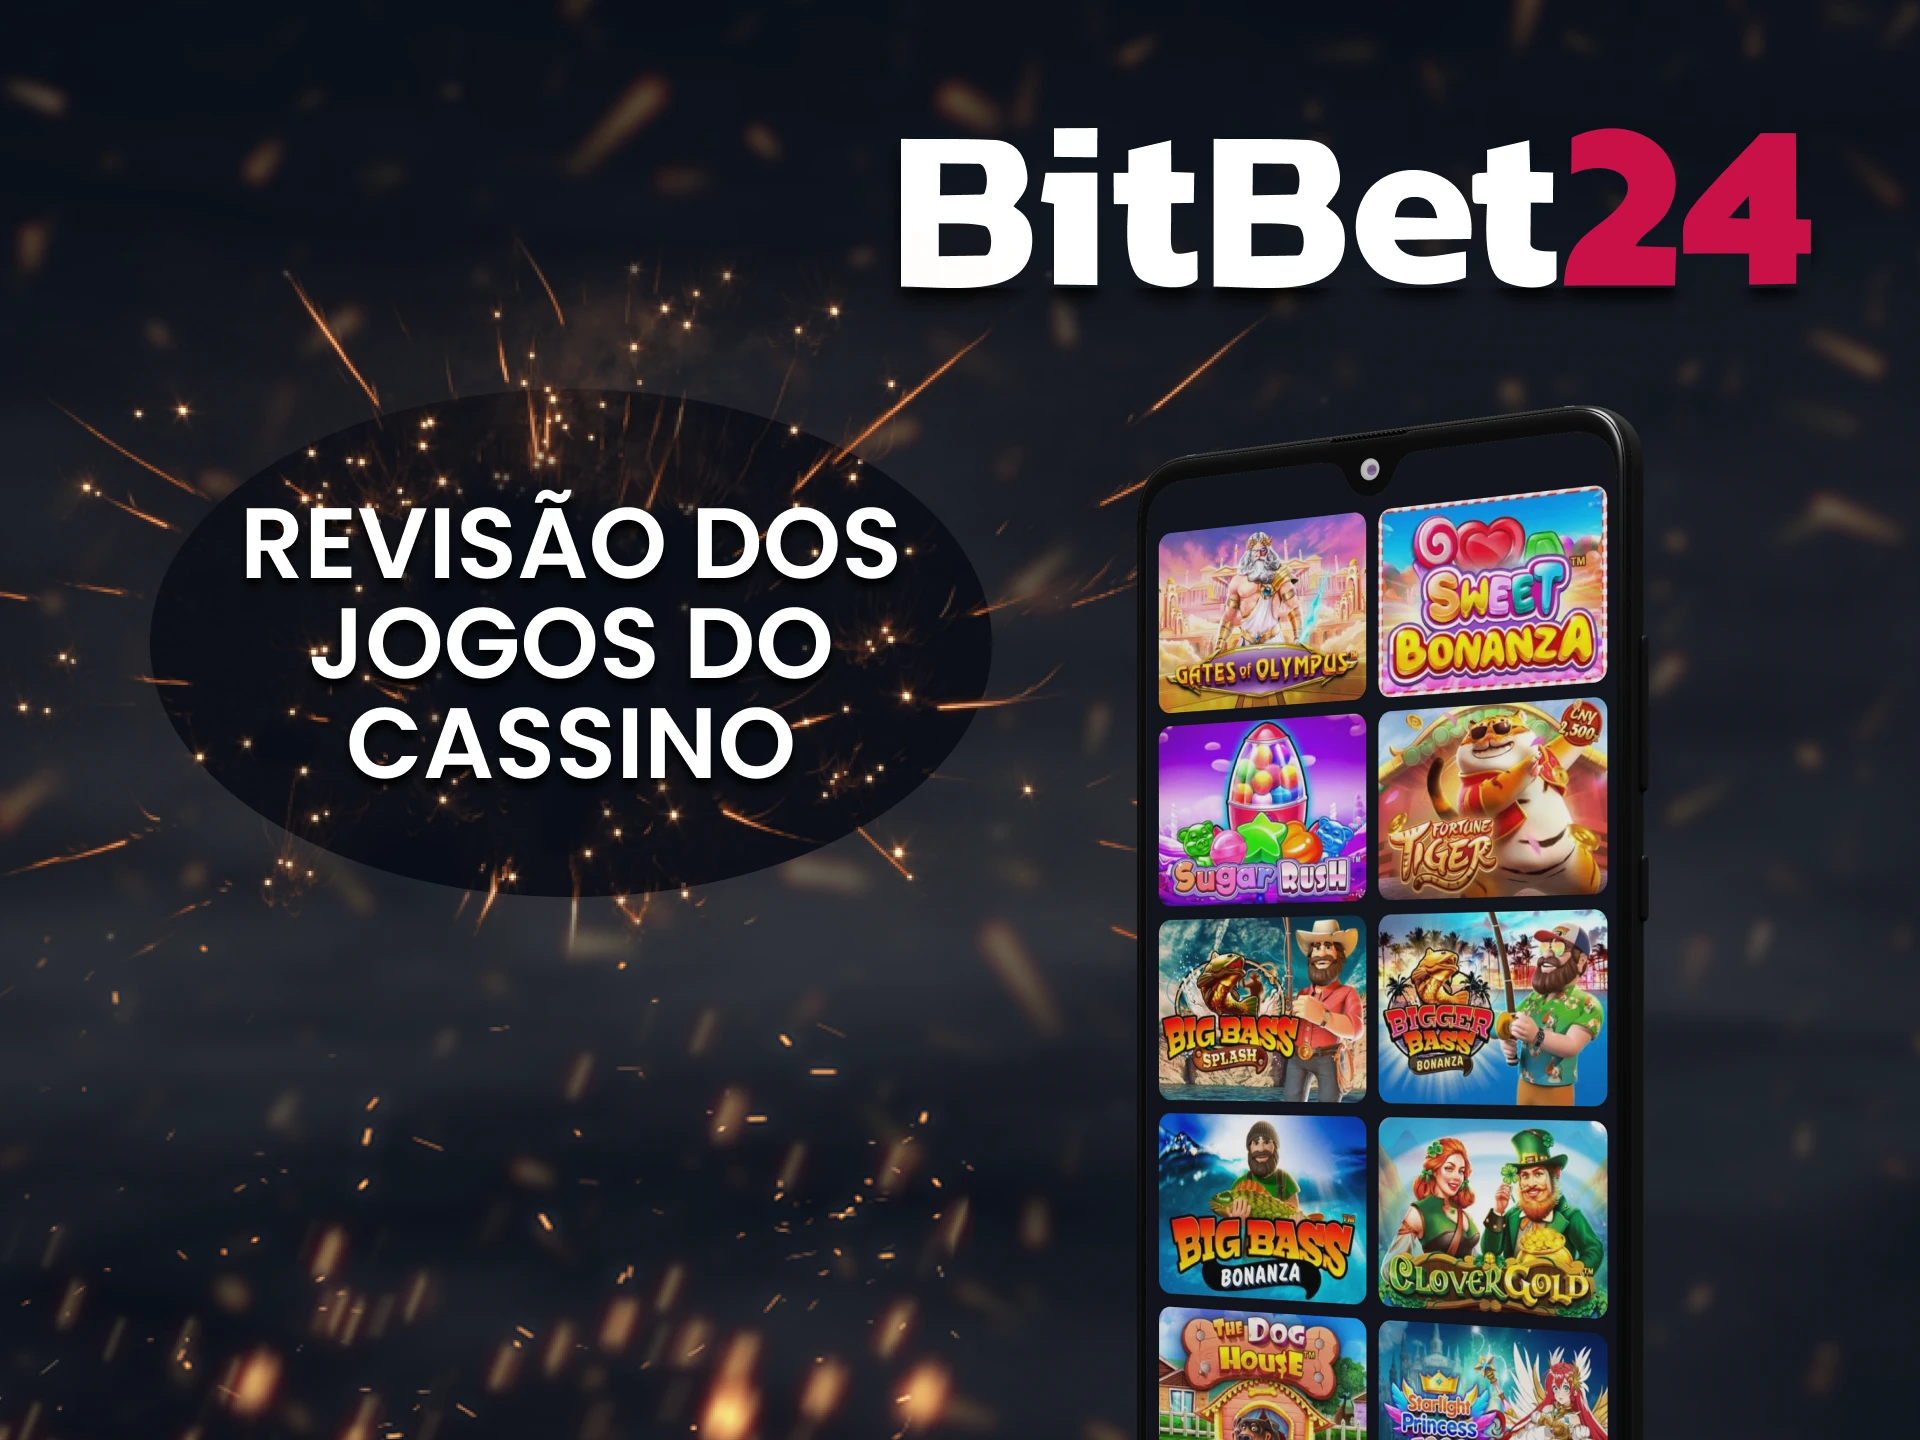 Diremos quais jogos de cassino você pode jogar no BitBet24.